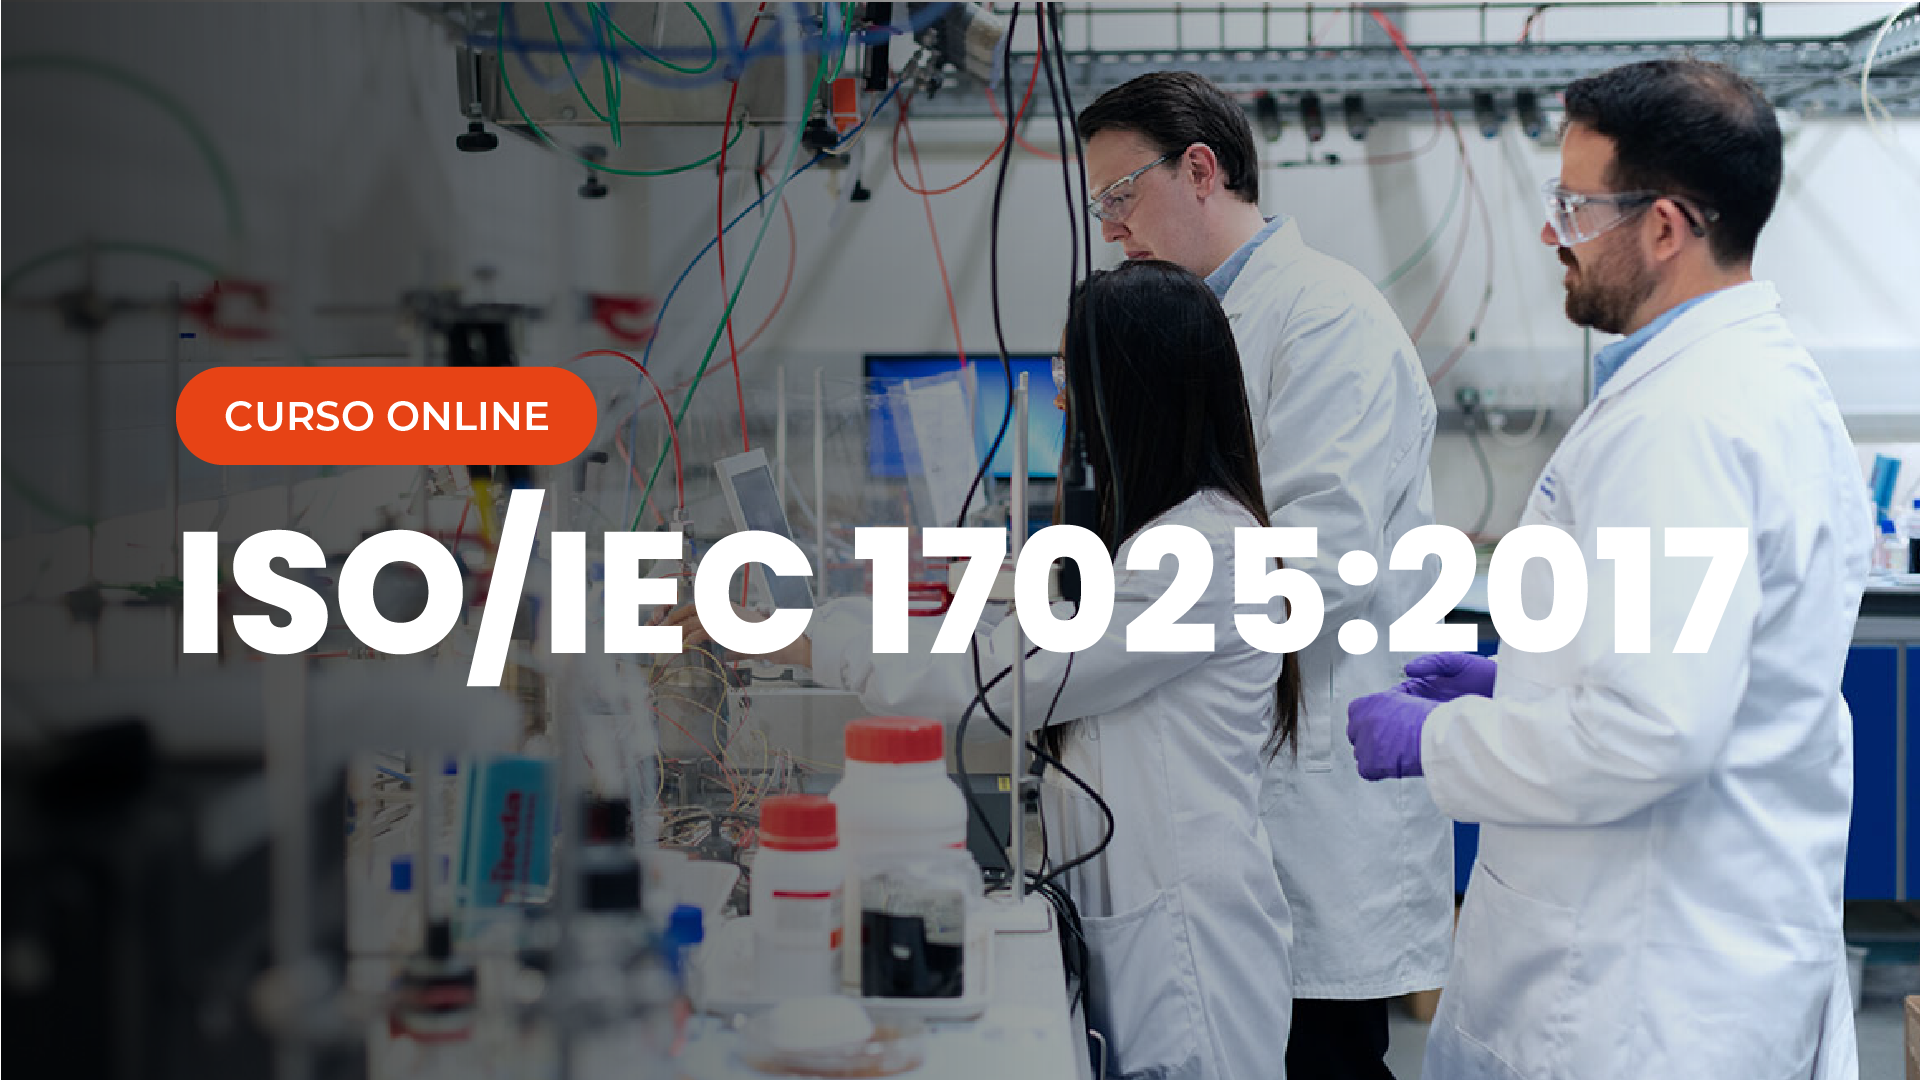 Curso Online ISO IEC 17025 2017 Requisitos gerais para competência de laboratórios de ensaio e calibração